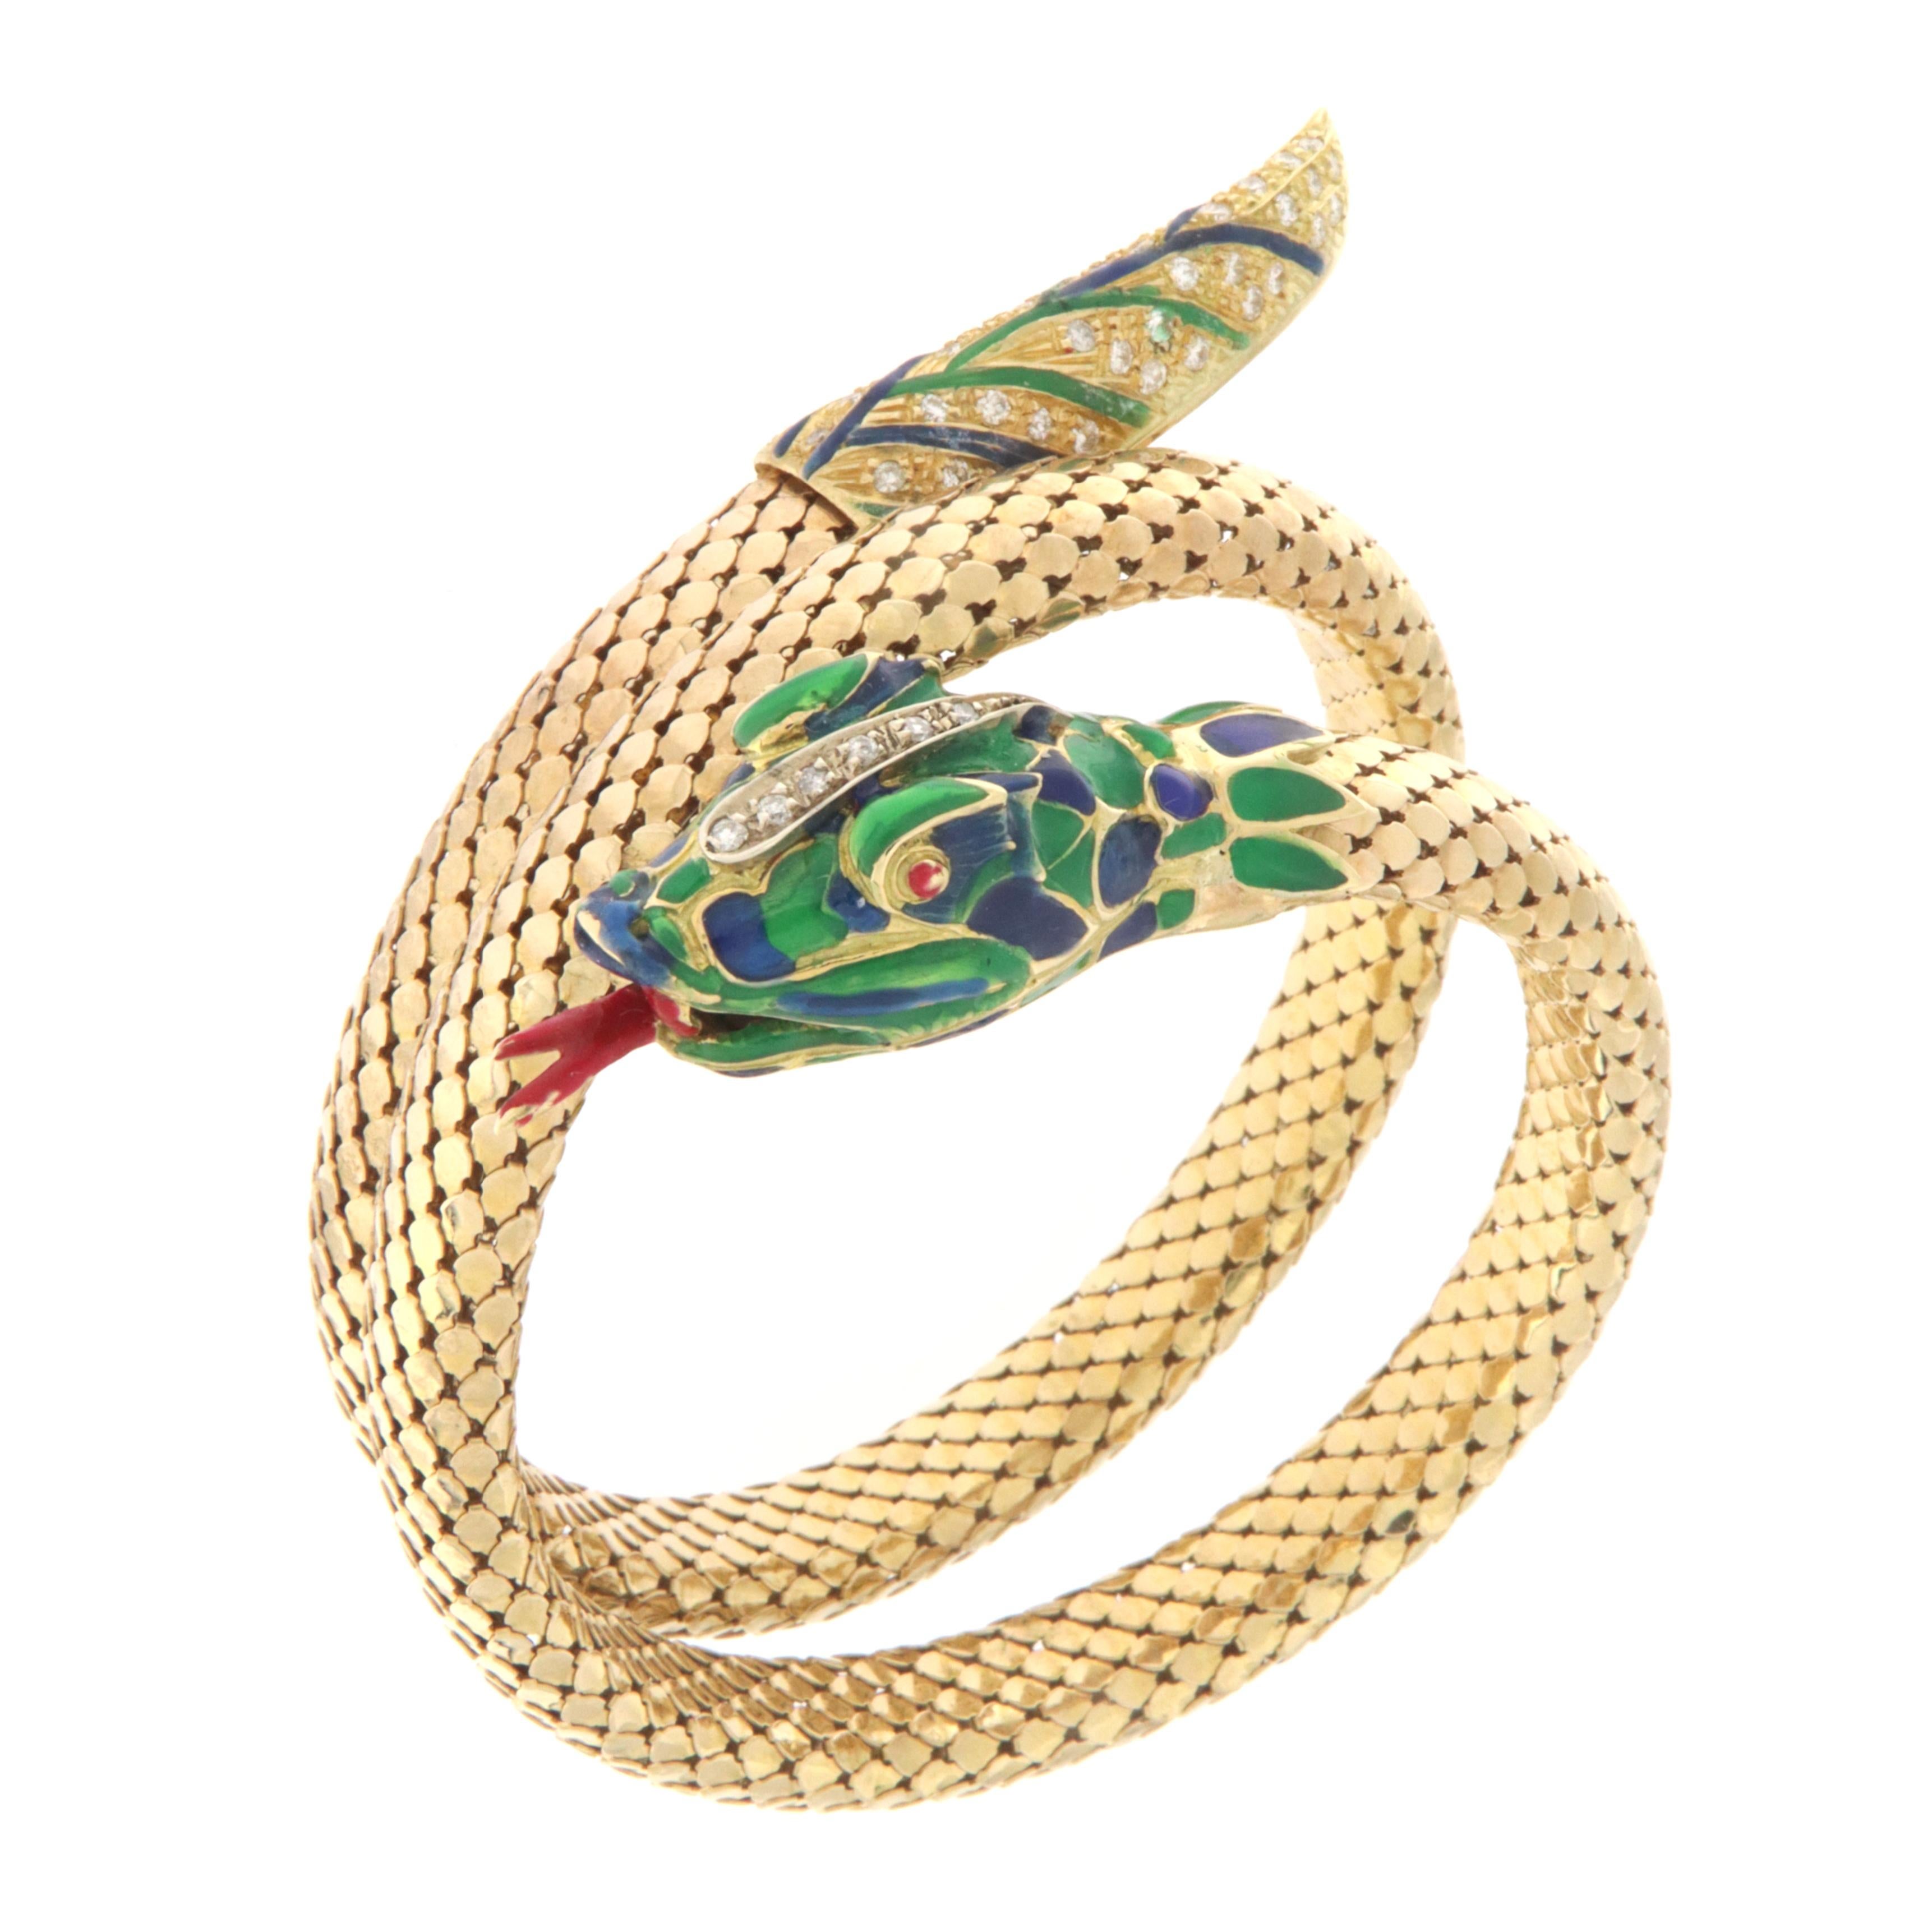 Wunderschönes Schlangenarmband aus 18 Karat Gelbgold, besetzt mit natürlichen Diamanten und grüner, blauer und roter Emaille. Das Armband kann an jede Handgelenksgröße angepasst werden, wie im Video gezeigt.
Schlangenförmige Schmuckstücke haben